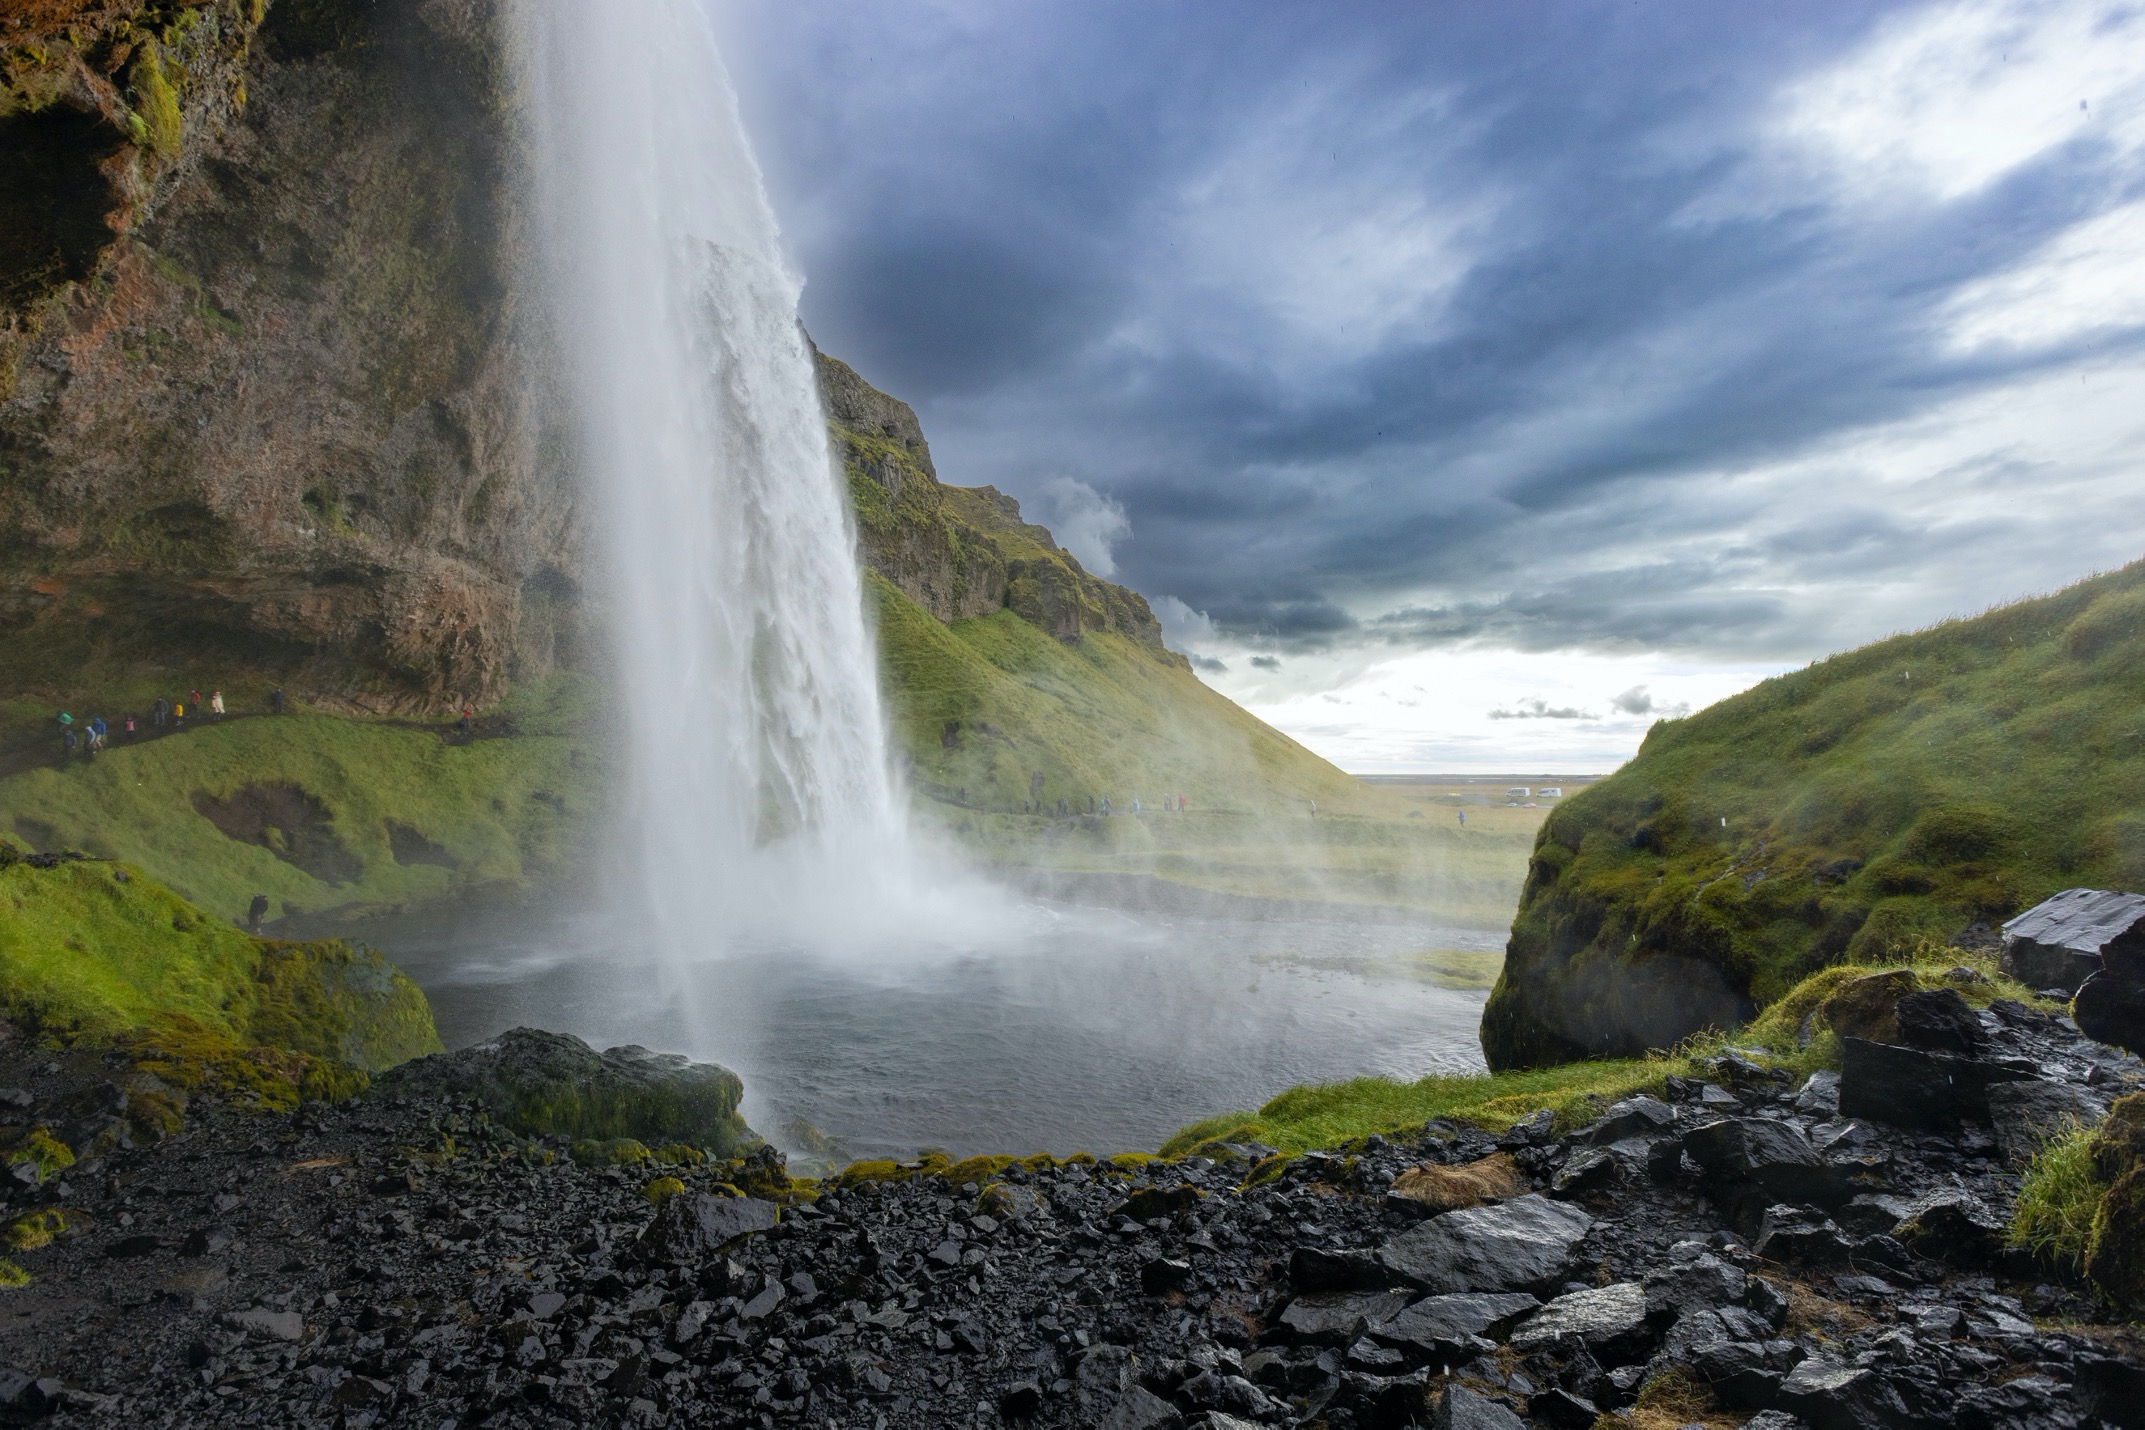 a towering seljandsfoss waterfall